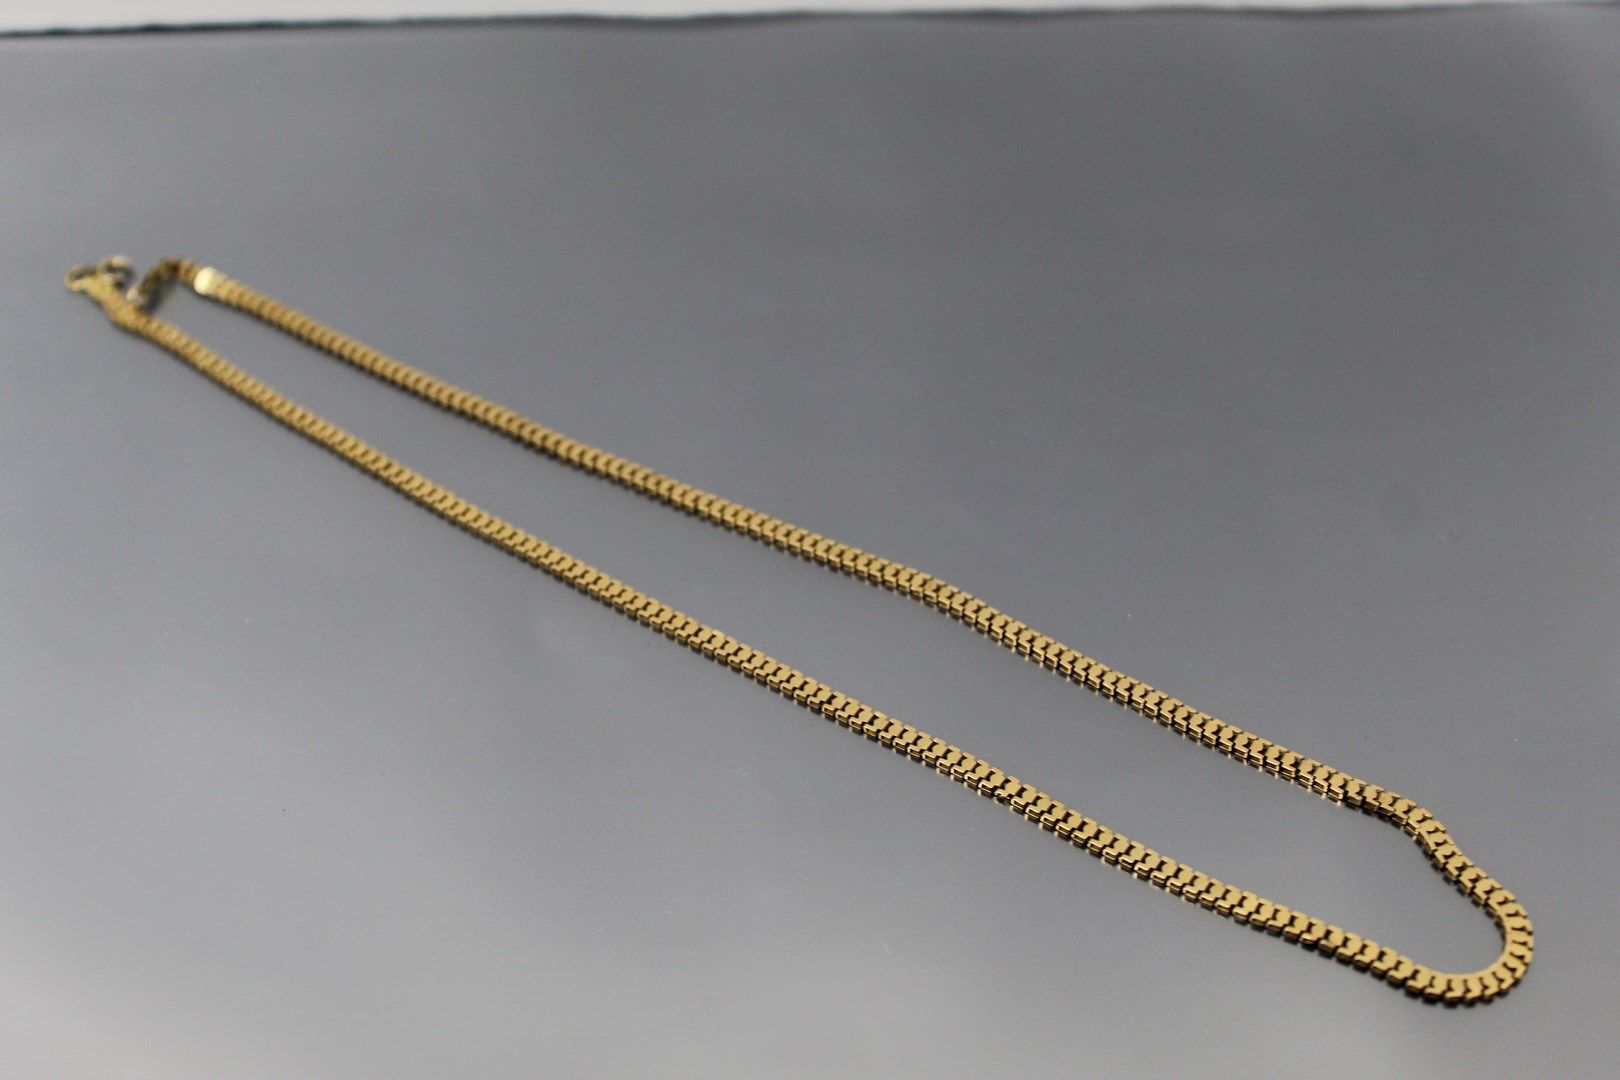 Null 18K（750）黄金项链。 

项链尺寸：46厘米。- 重量：6克。

(意外的是，在扣子上。)